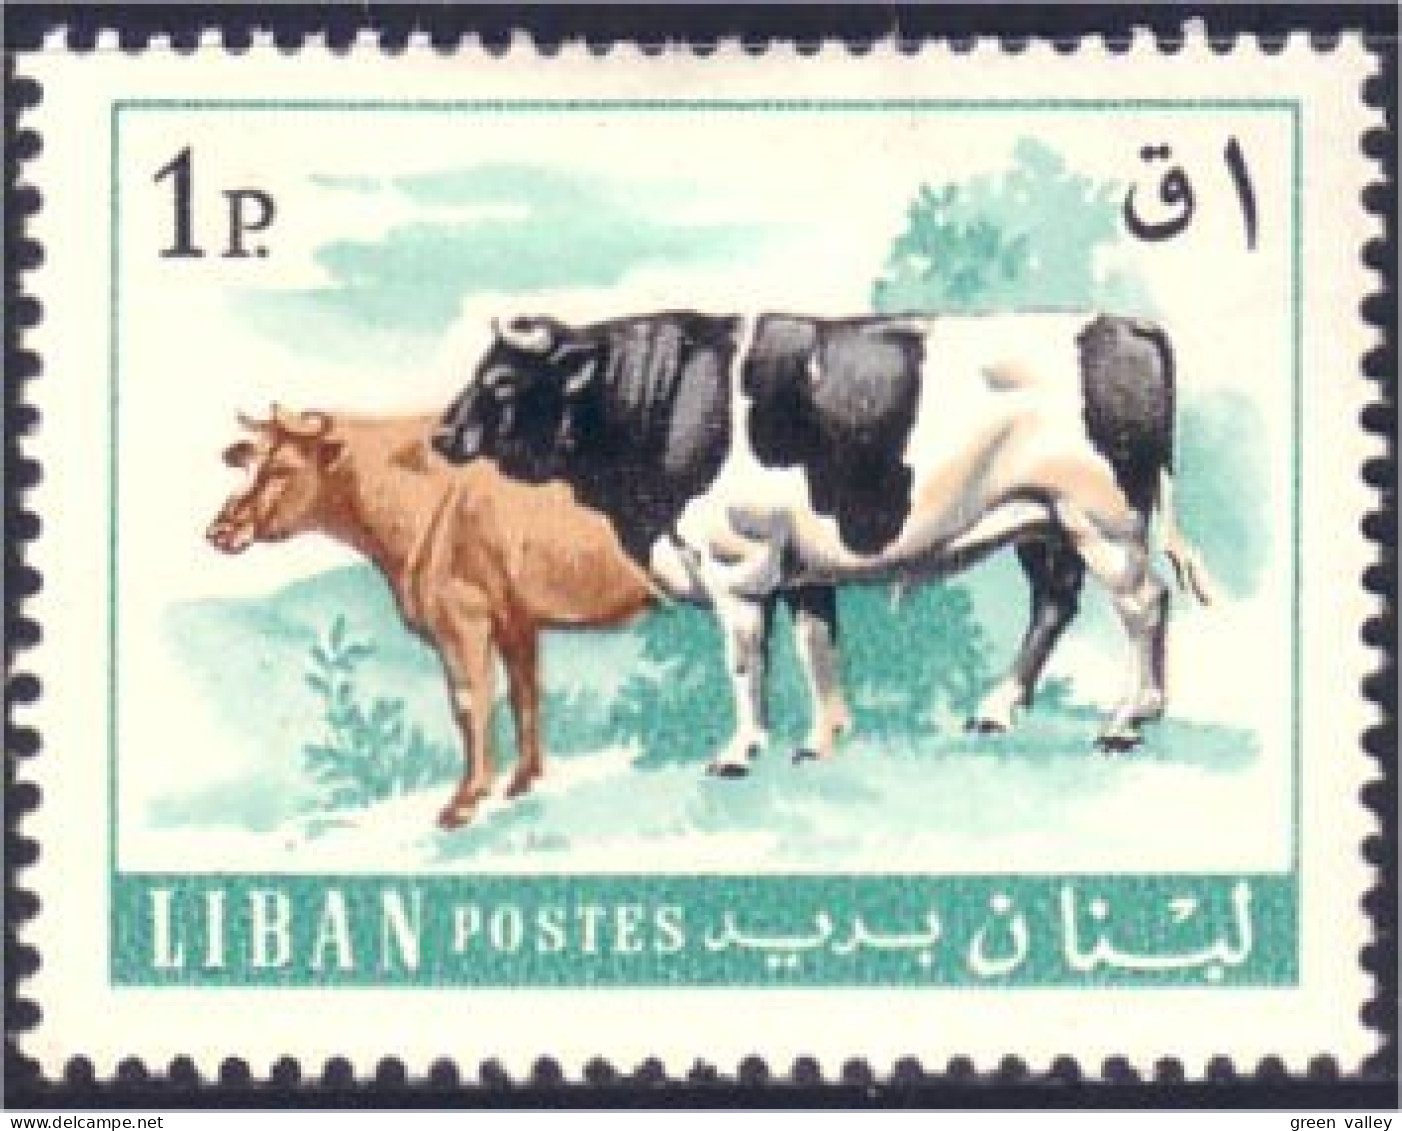 566 Liban Cattle Bull Cow Vache Taureau MH * Neuf (LBN-74) - Farm